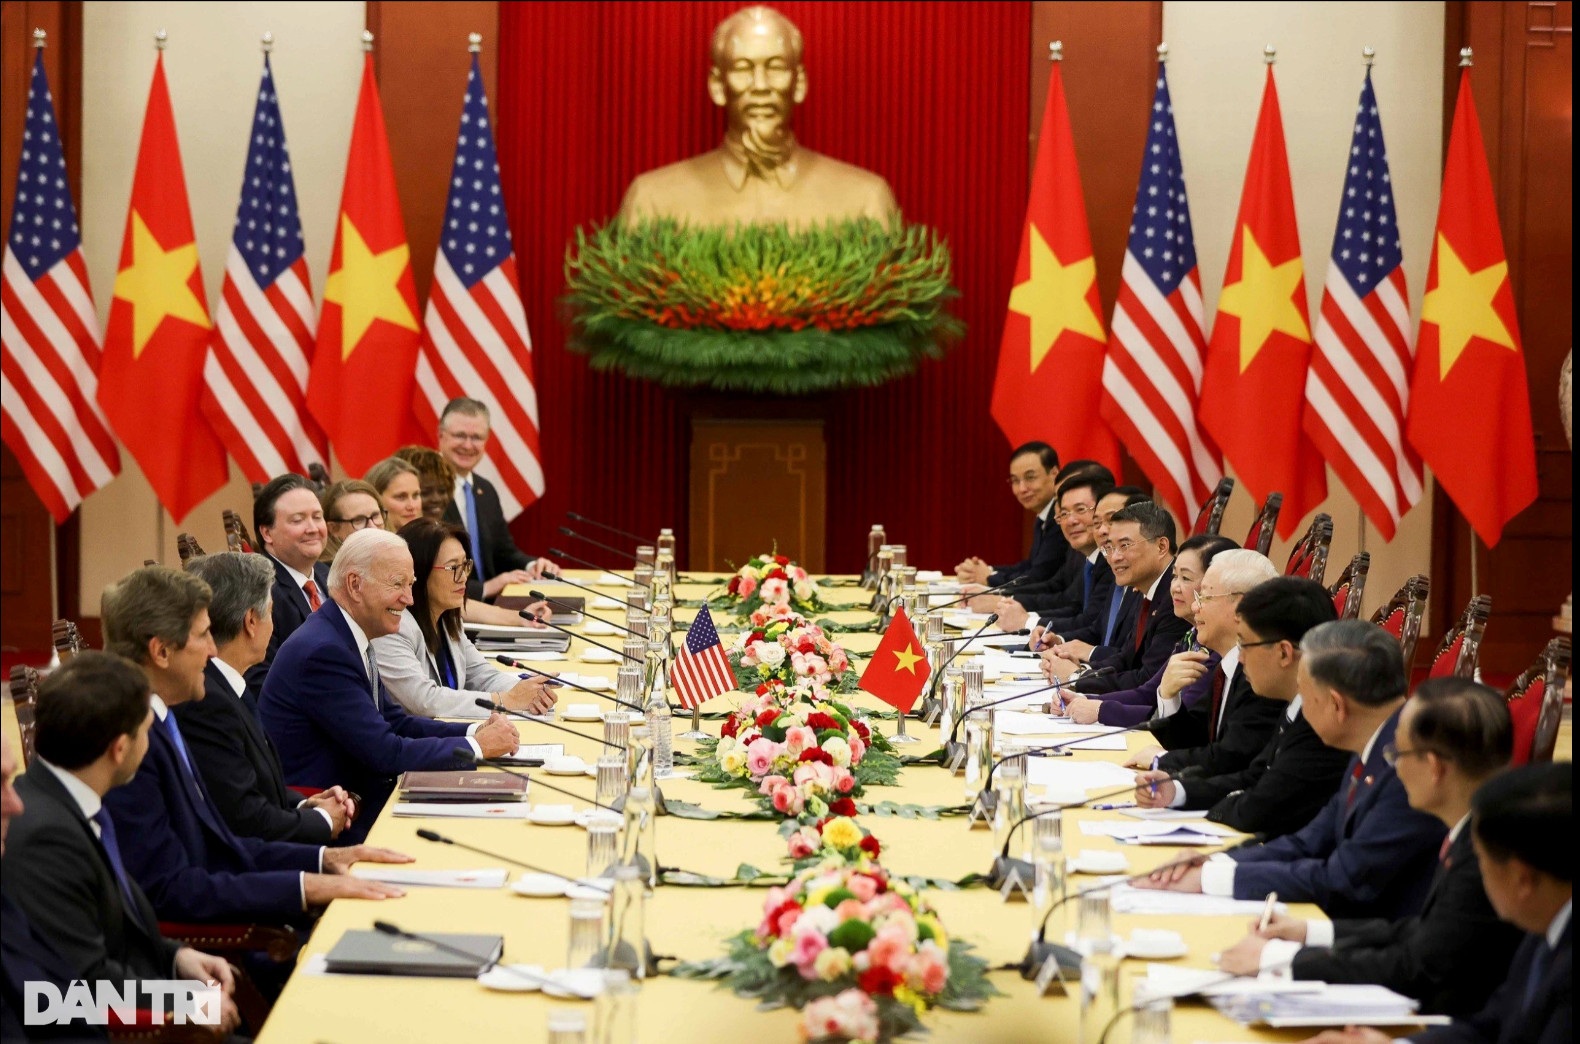 Tuyên bố chung mở ra kỷ nguyên mới trong hợp tác giữa Việt Nam và Mỹ - 3